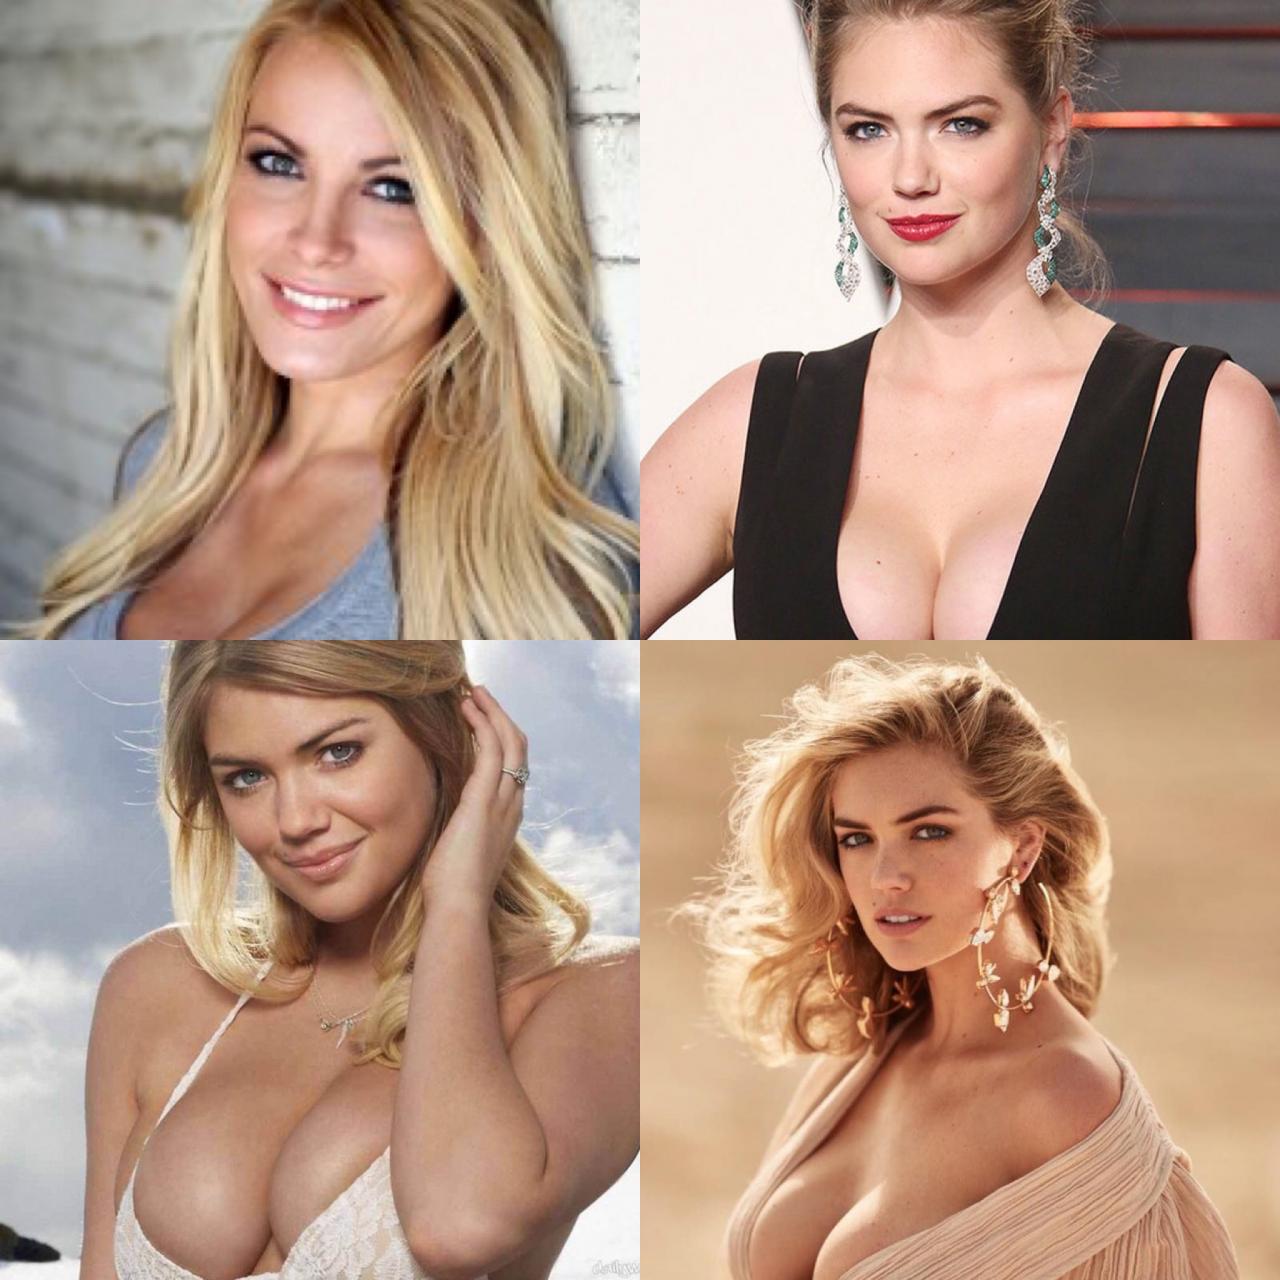 Блондинка с очень большой грудью меряет новый.. — Video | VK